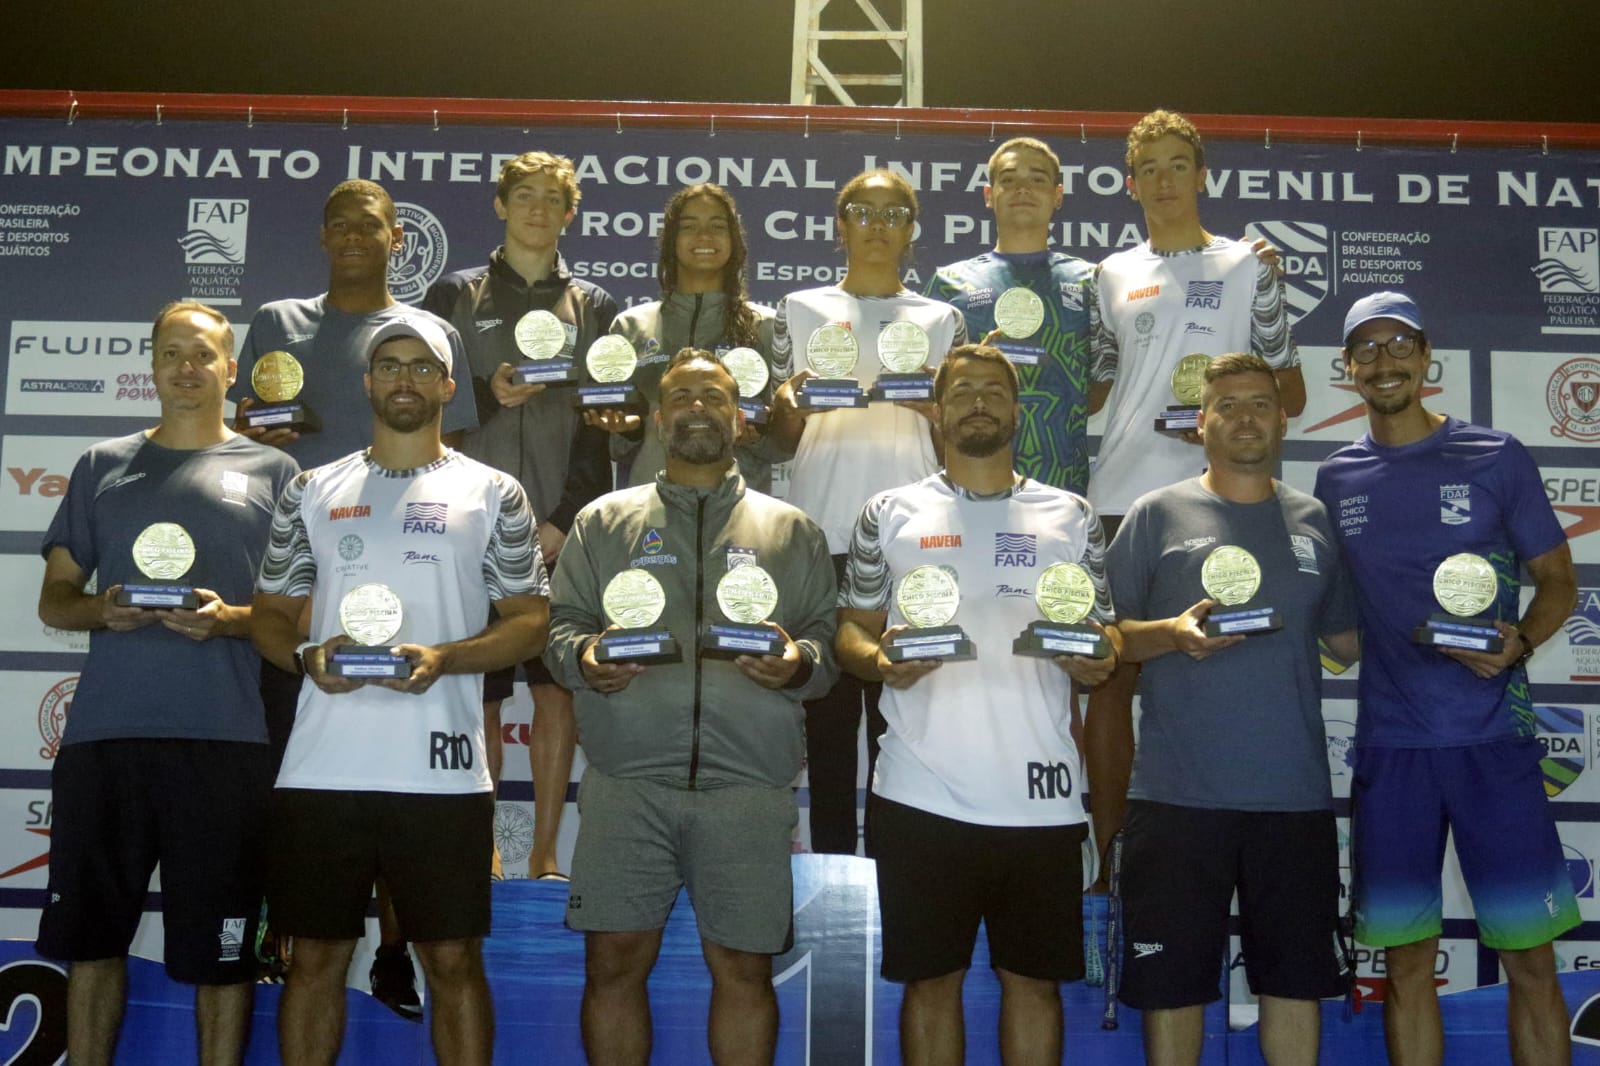 Natação. Clube alcobacense conquista 35 pódios no Torneio de Meio